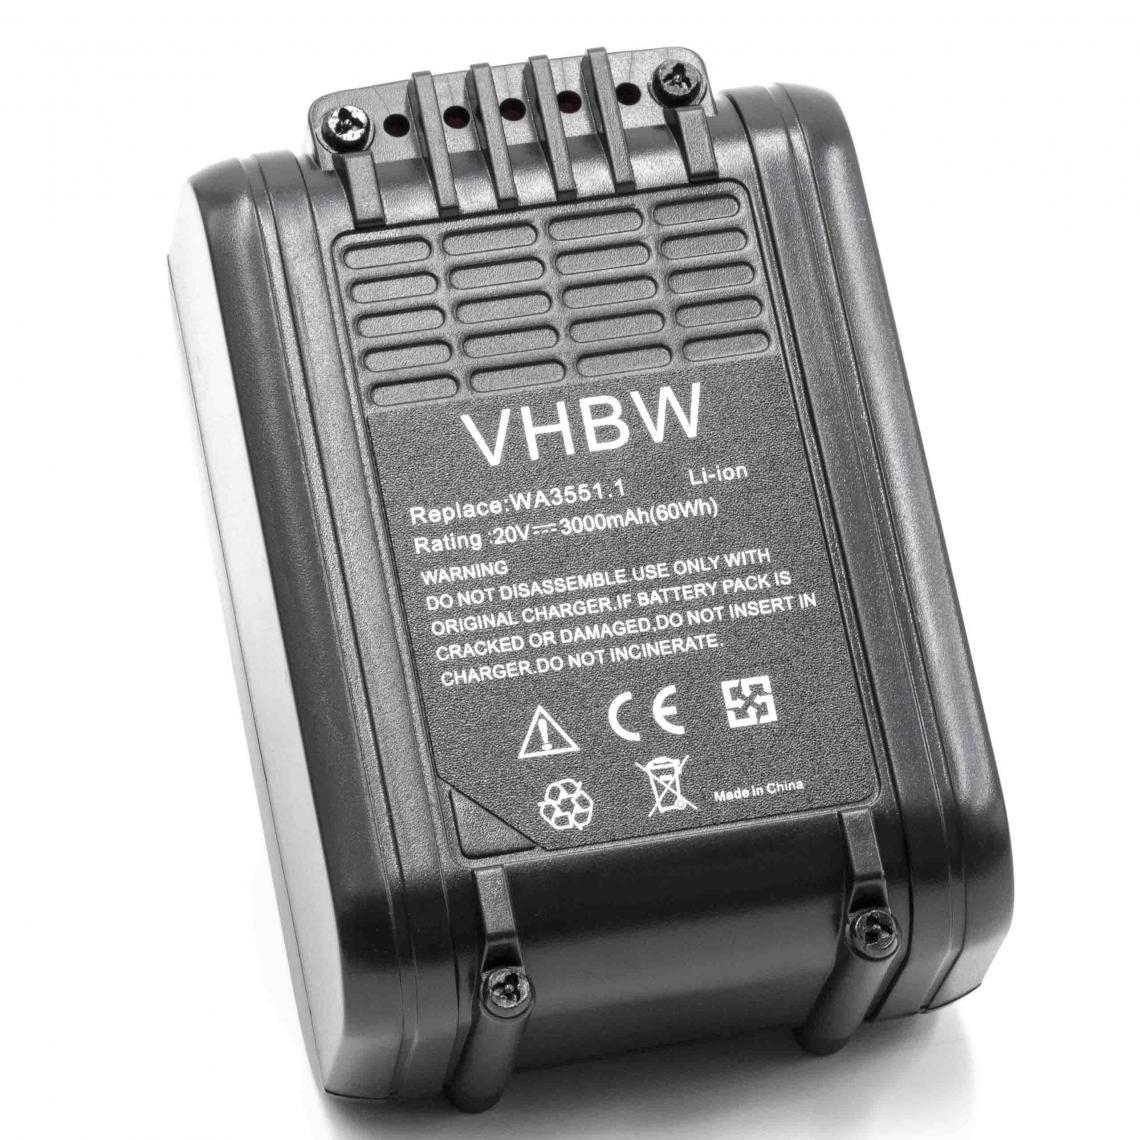 Vhbw - vhbw Batterie compatible avec Worx H3 WX390, H3 WX390E, RW9161, WG150, WG151, WG151.5, WG151E outil électrique (3000mAh Li-ion 20 V) - Clouterie